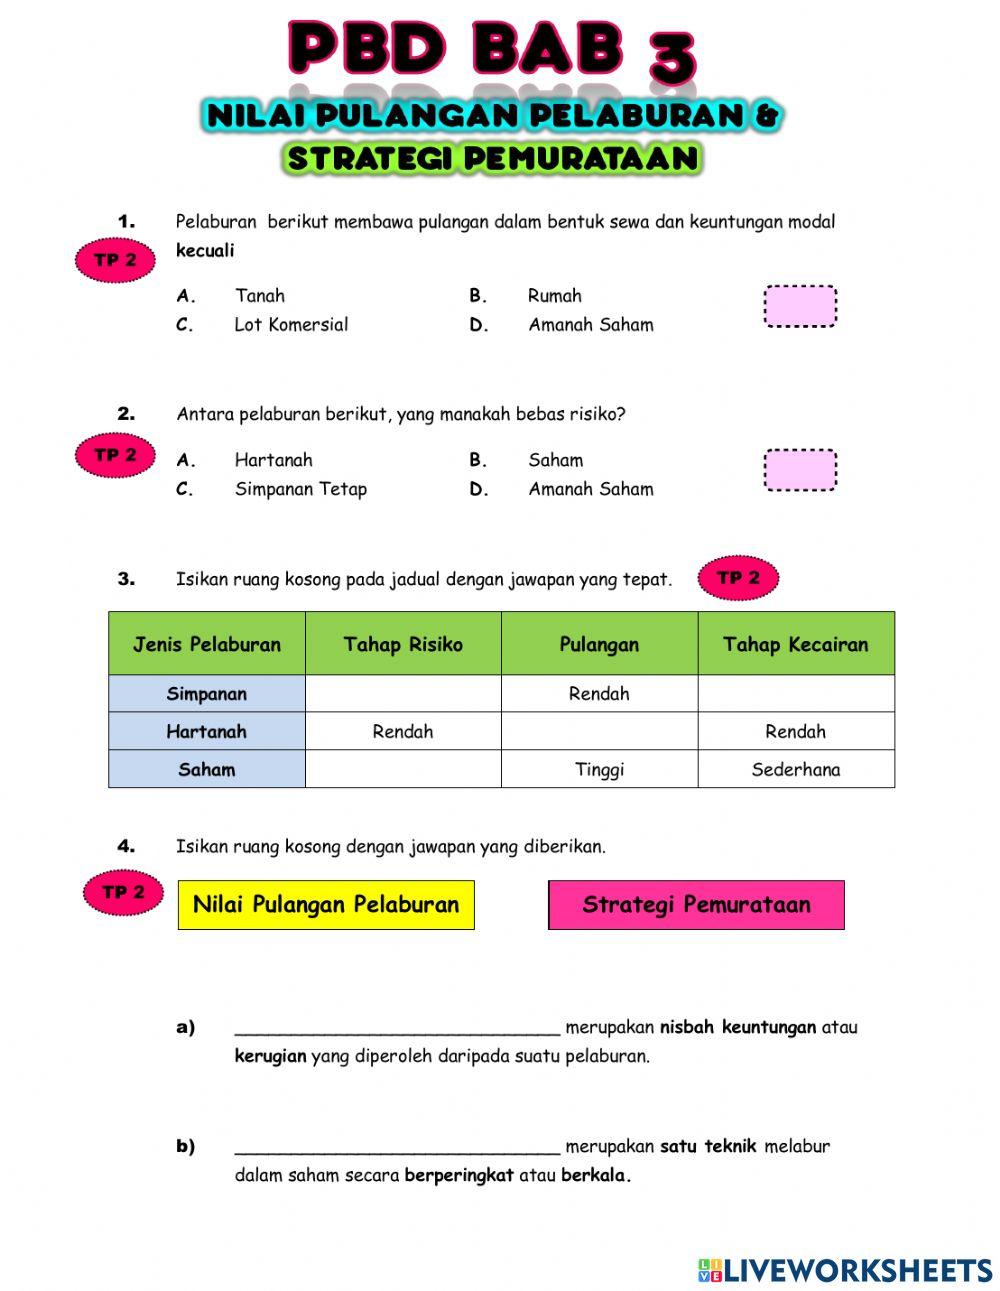 Pbd bab 3 (pulangan pelaburan&strategi pemurataan)